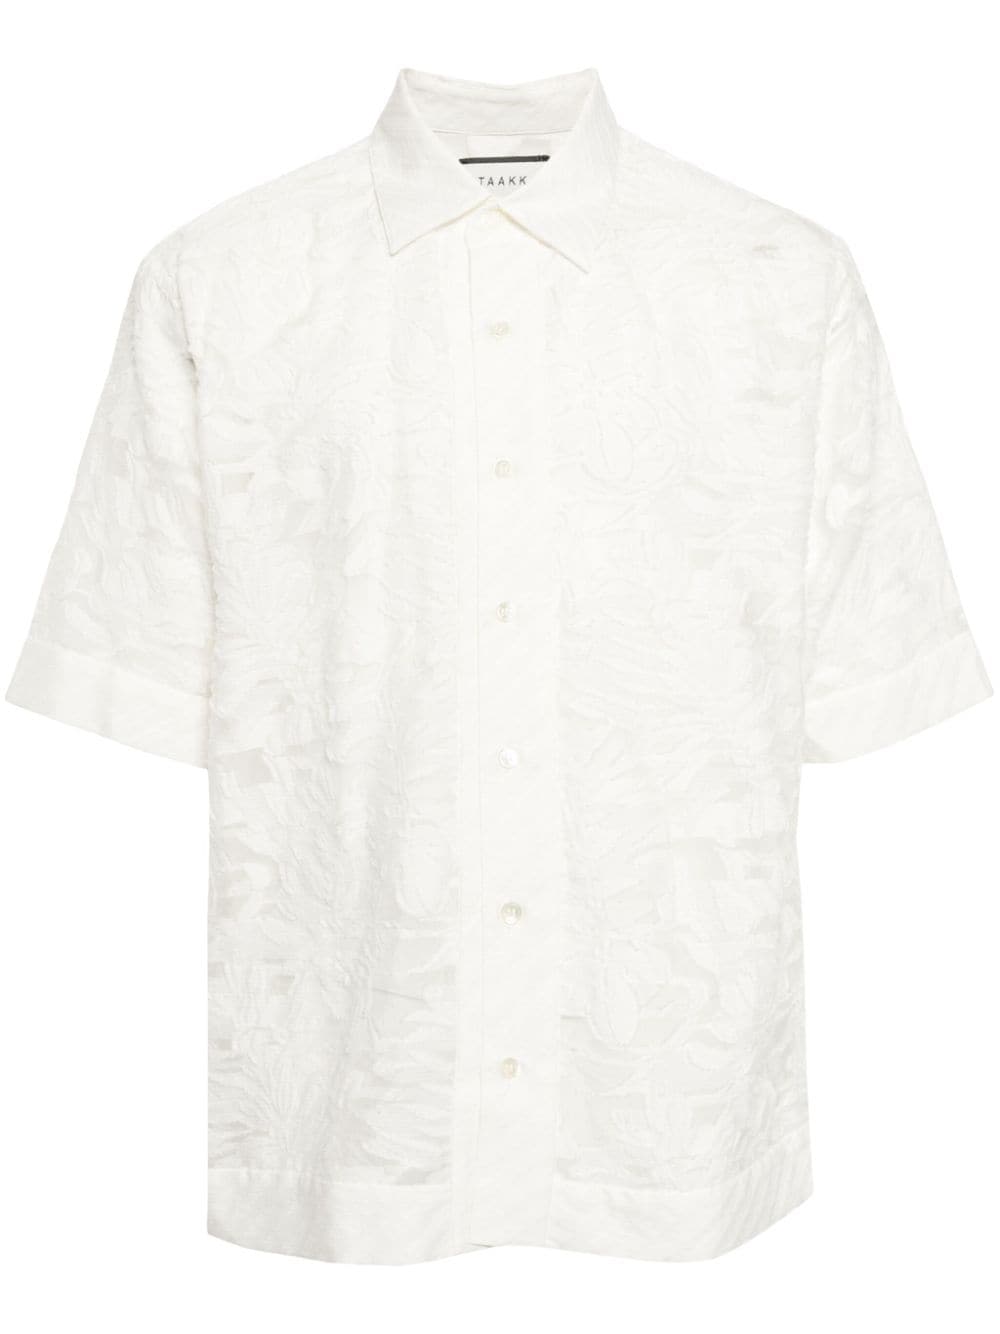 Taakk Devoré-effect Semi-sheer Shirt In White